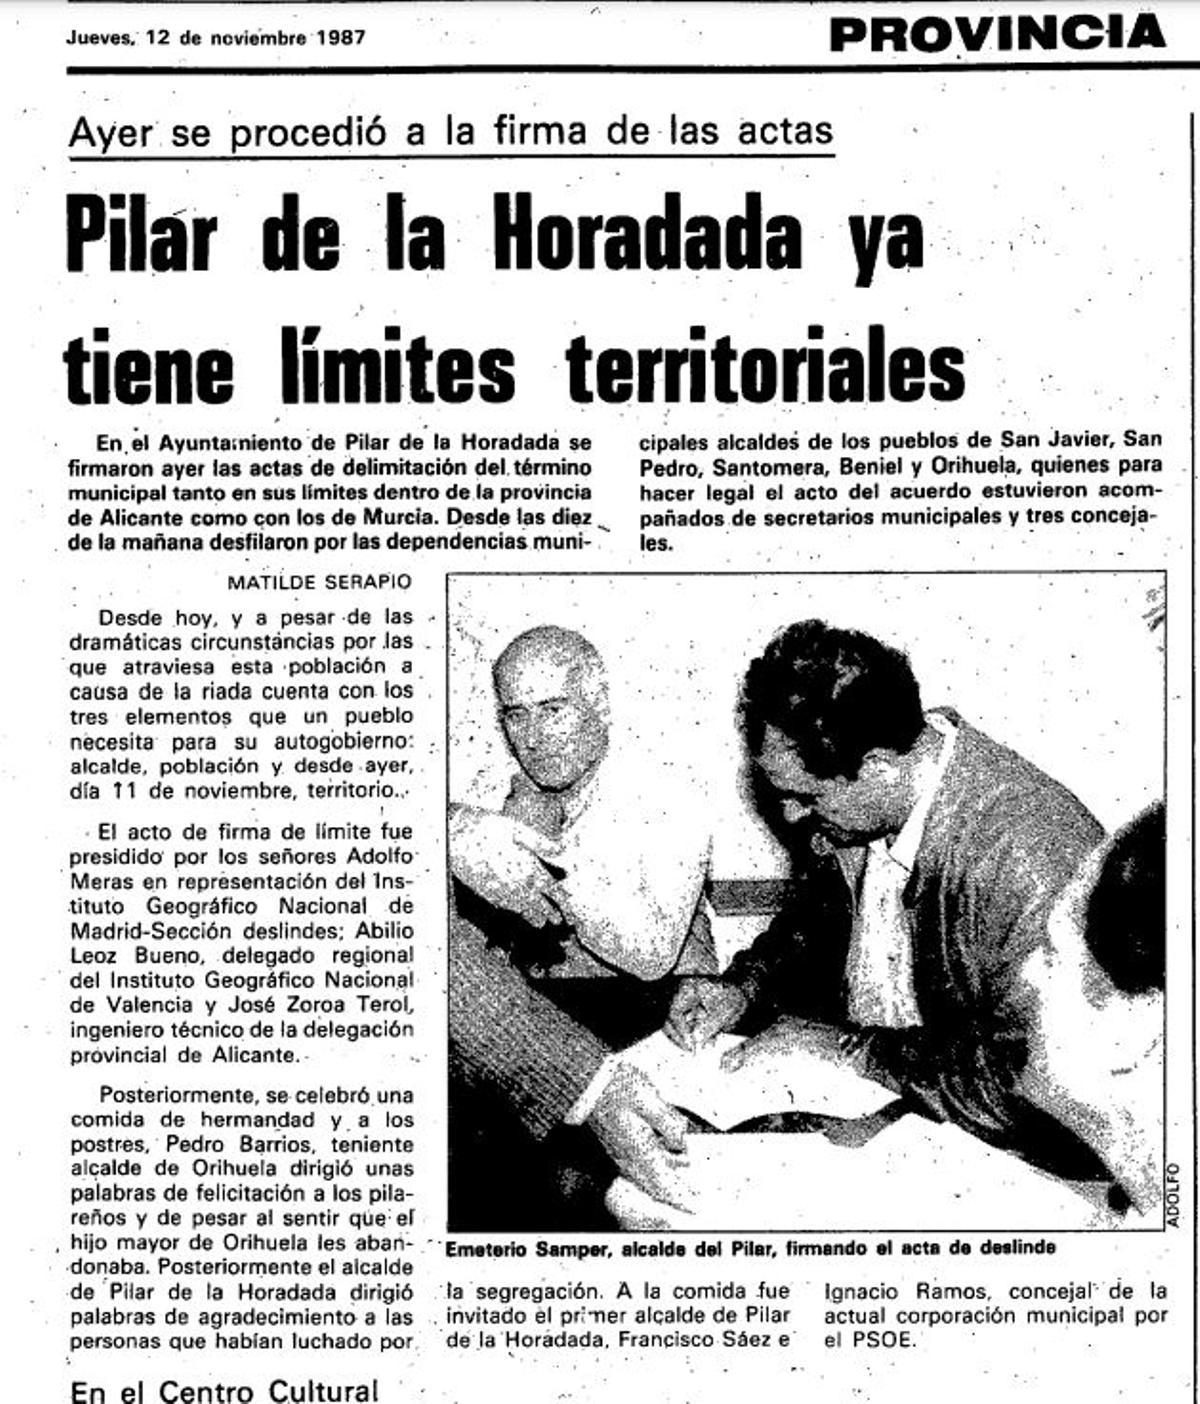 Artículo en INFORMACIÓN sobre la rúbrica de la superficie oficial de Pilar de la Horadada en noviembre de 1987 por parte de Emeterio Samper como alcalde